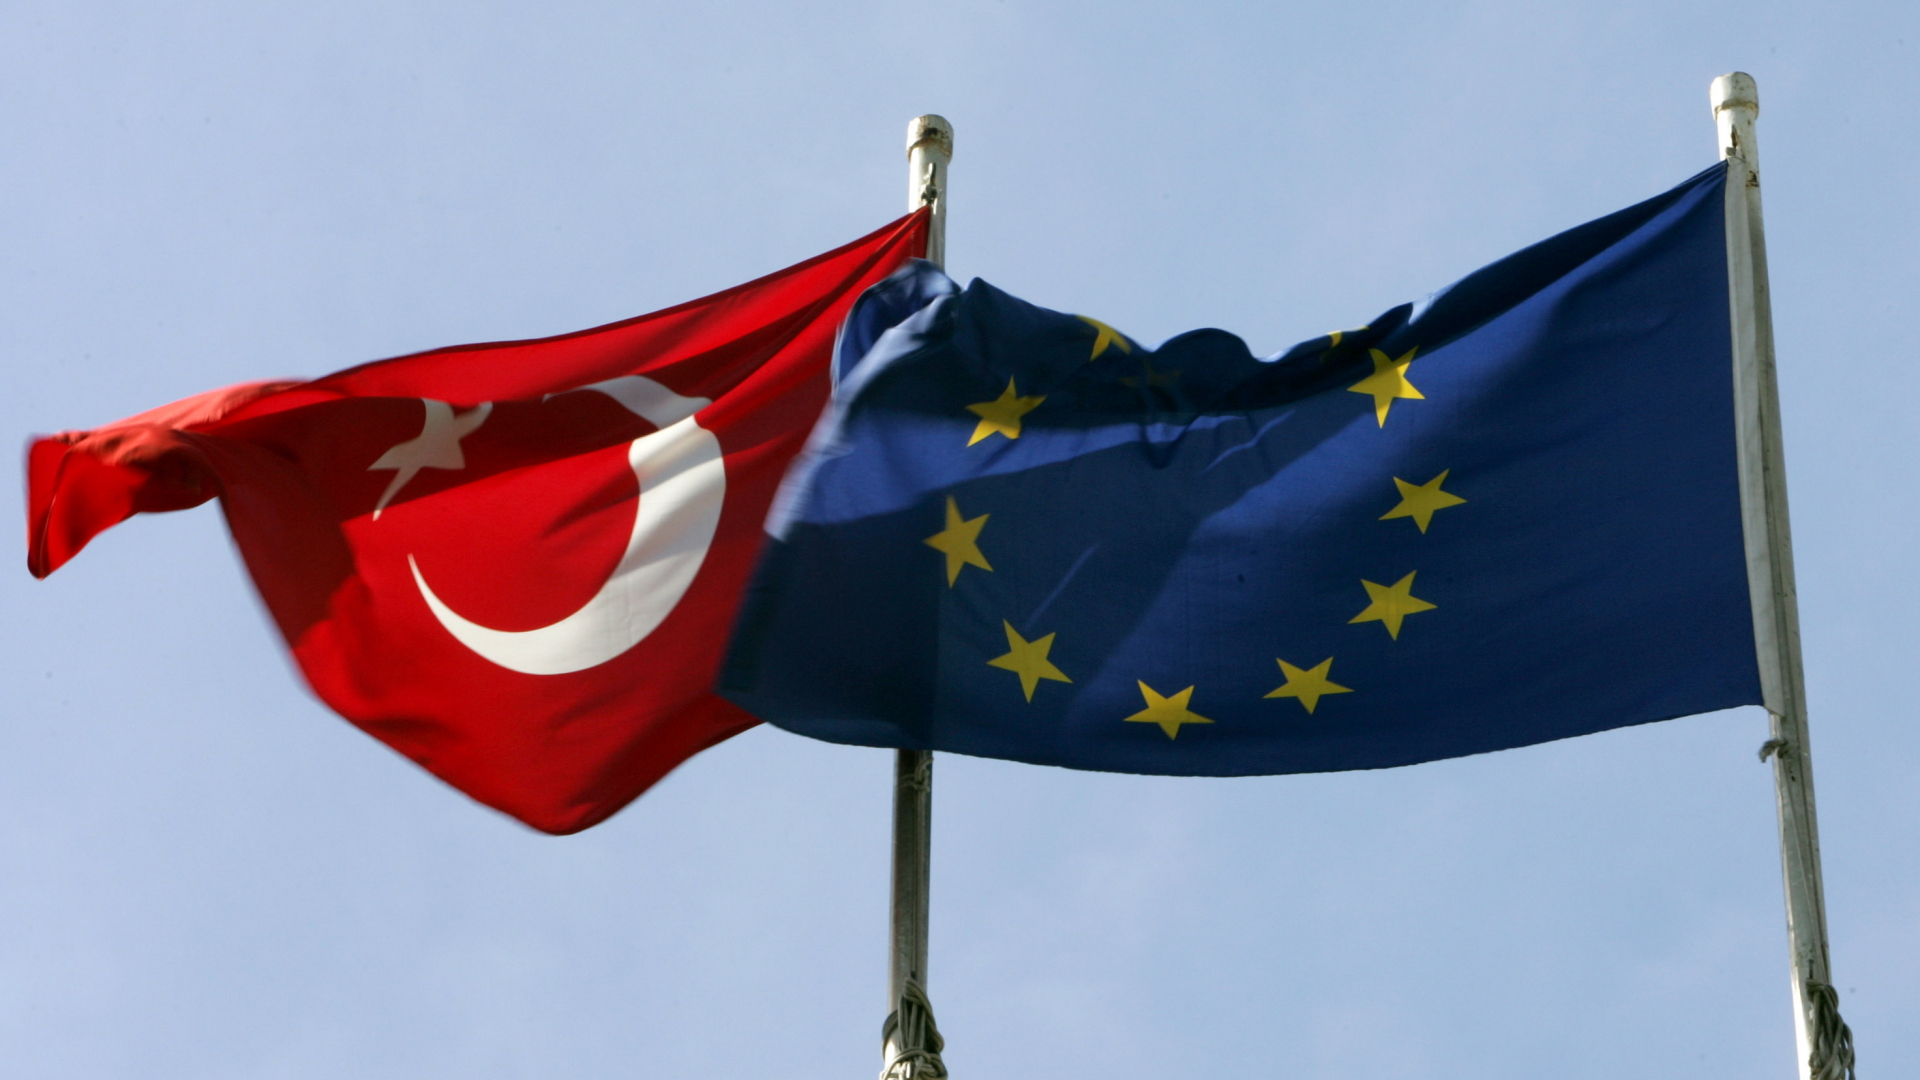 Flagge der Türkei und der EU